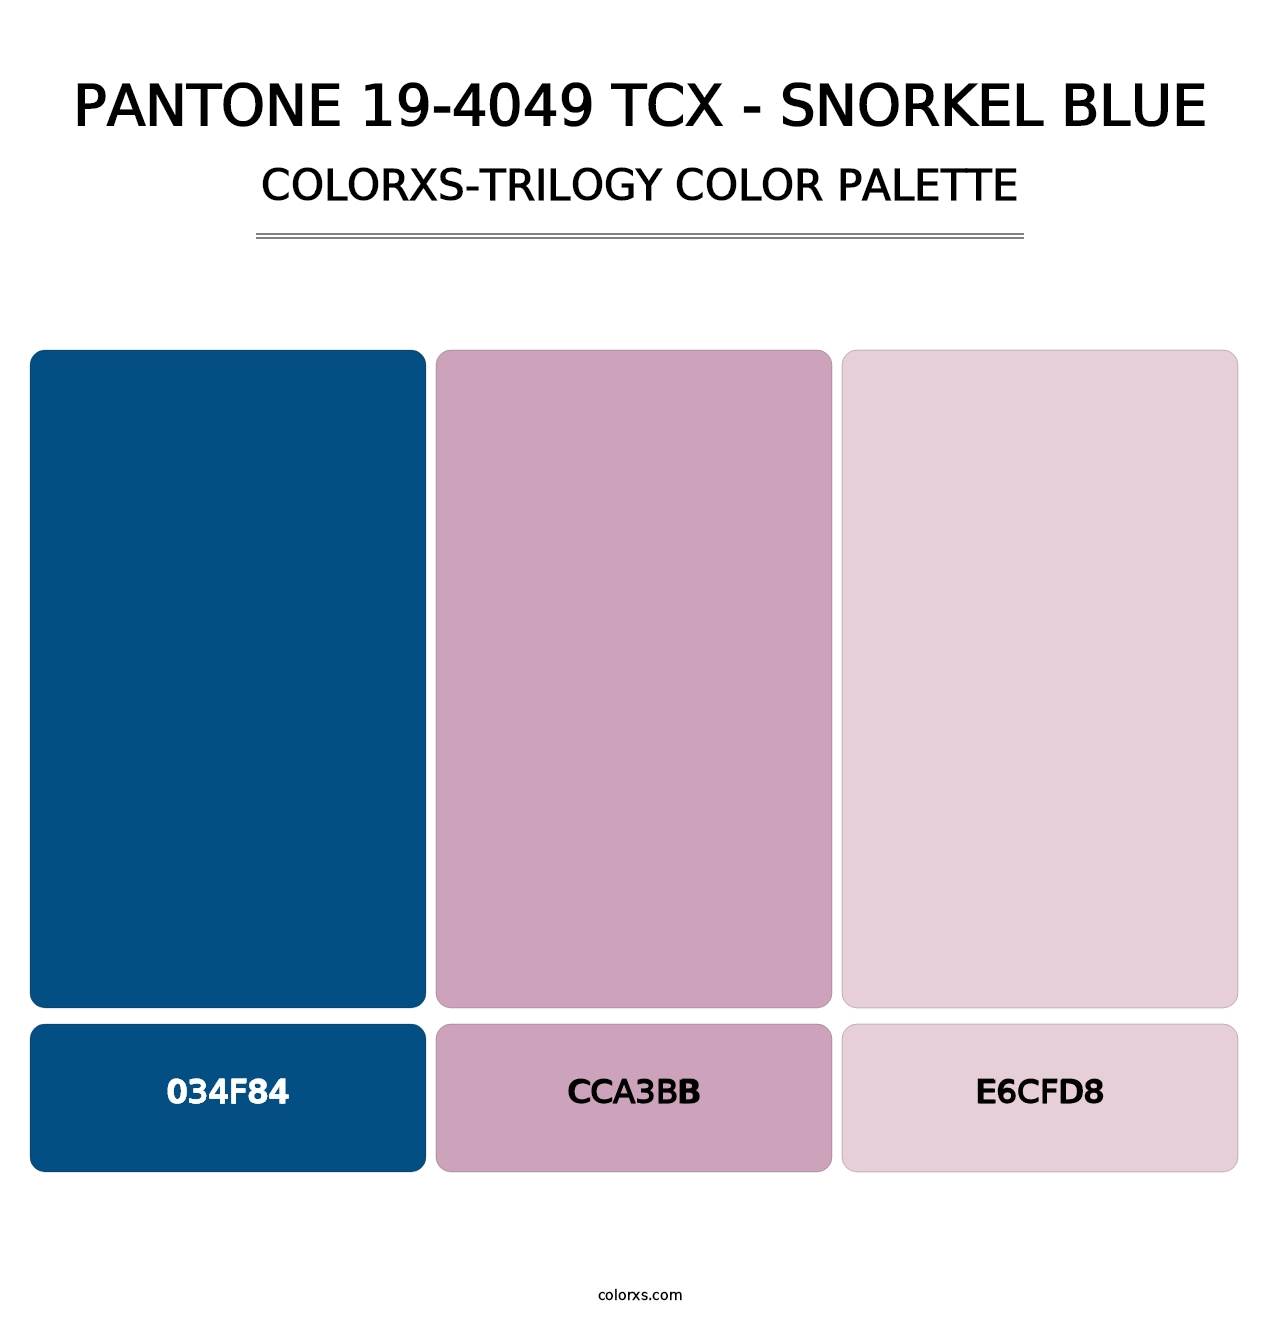 PANTONE 19-4049 TCX - Snorkel Blue - Colorxs Trilogy Palette